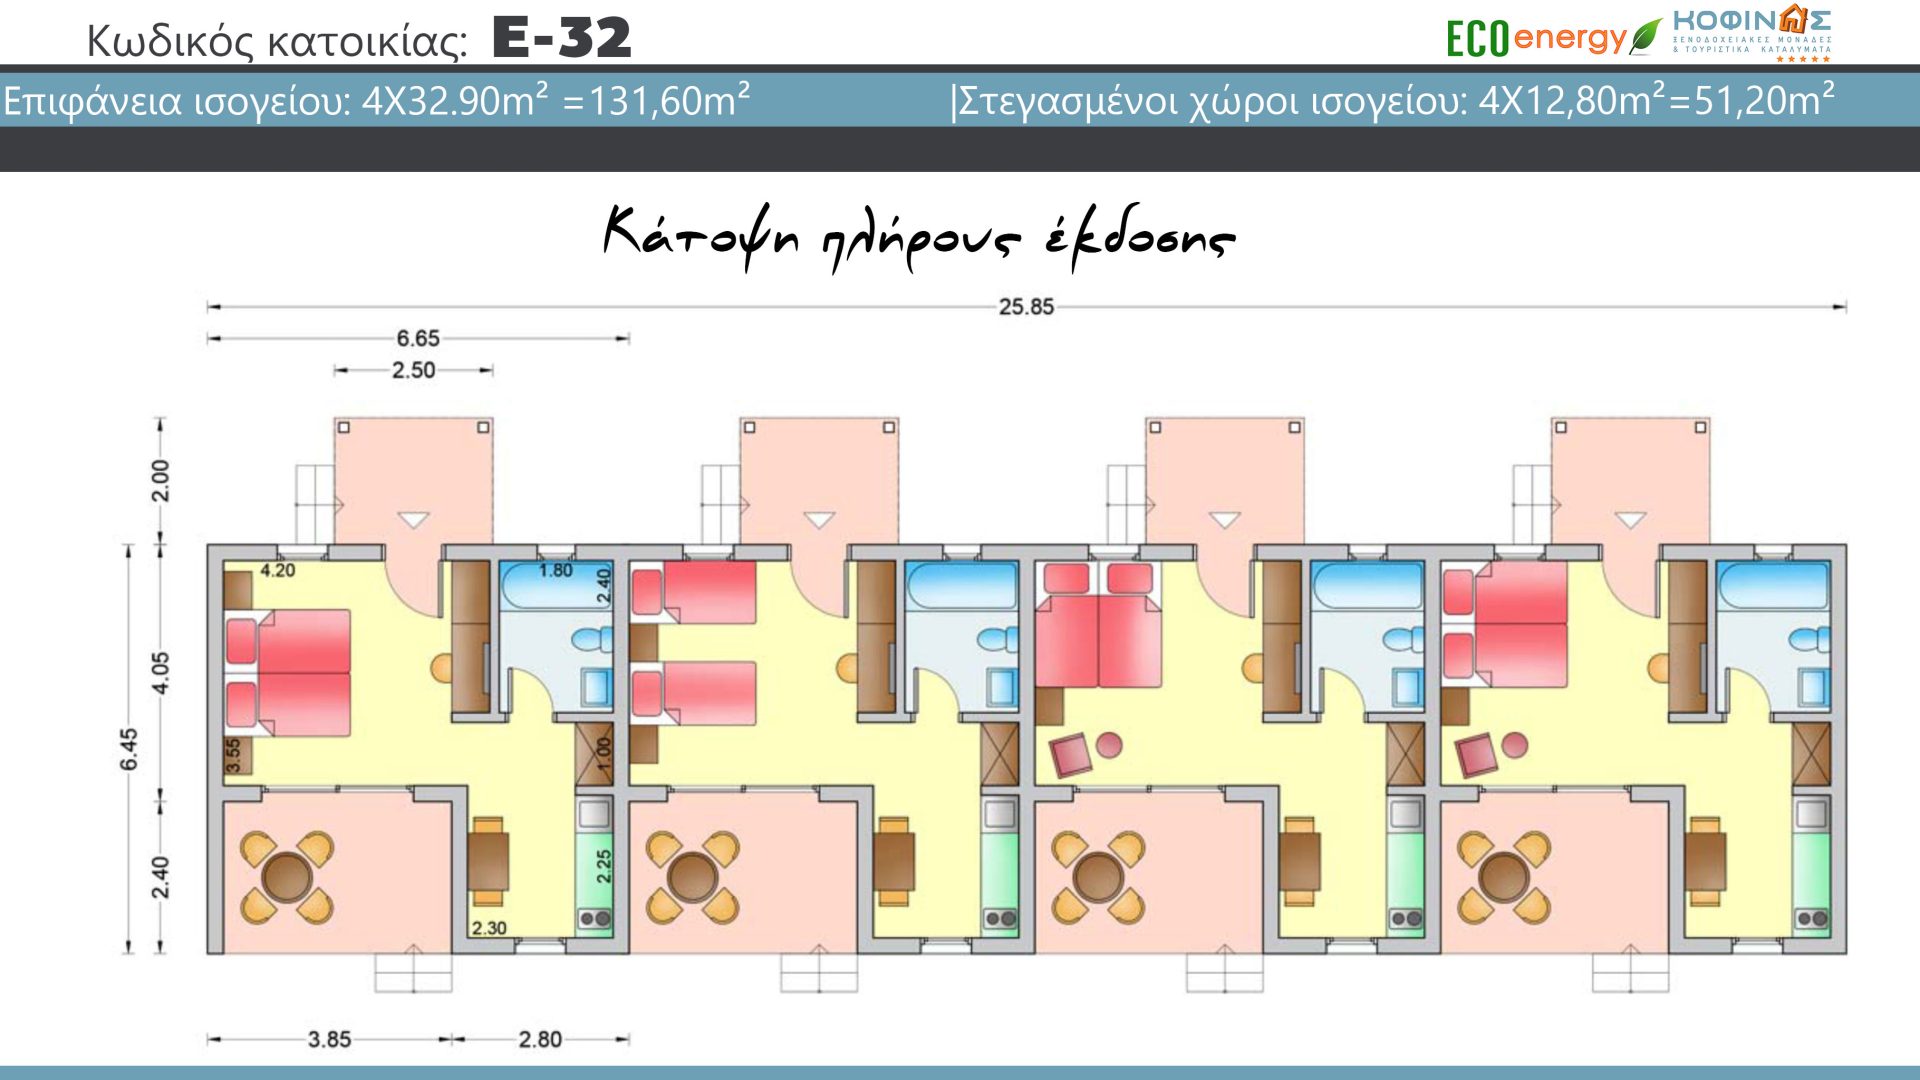 Συγκρότημα Κατοικιών E-32, συνολικής επιφάνειας 4 x 32,90 = 131,60 τ.μ. , συνολική επιφάνεια στεγασμένων χώρων 51.20 m²